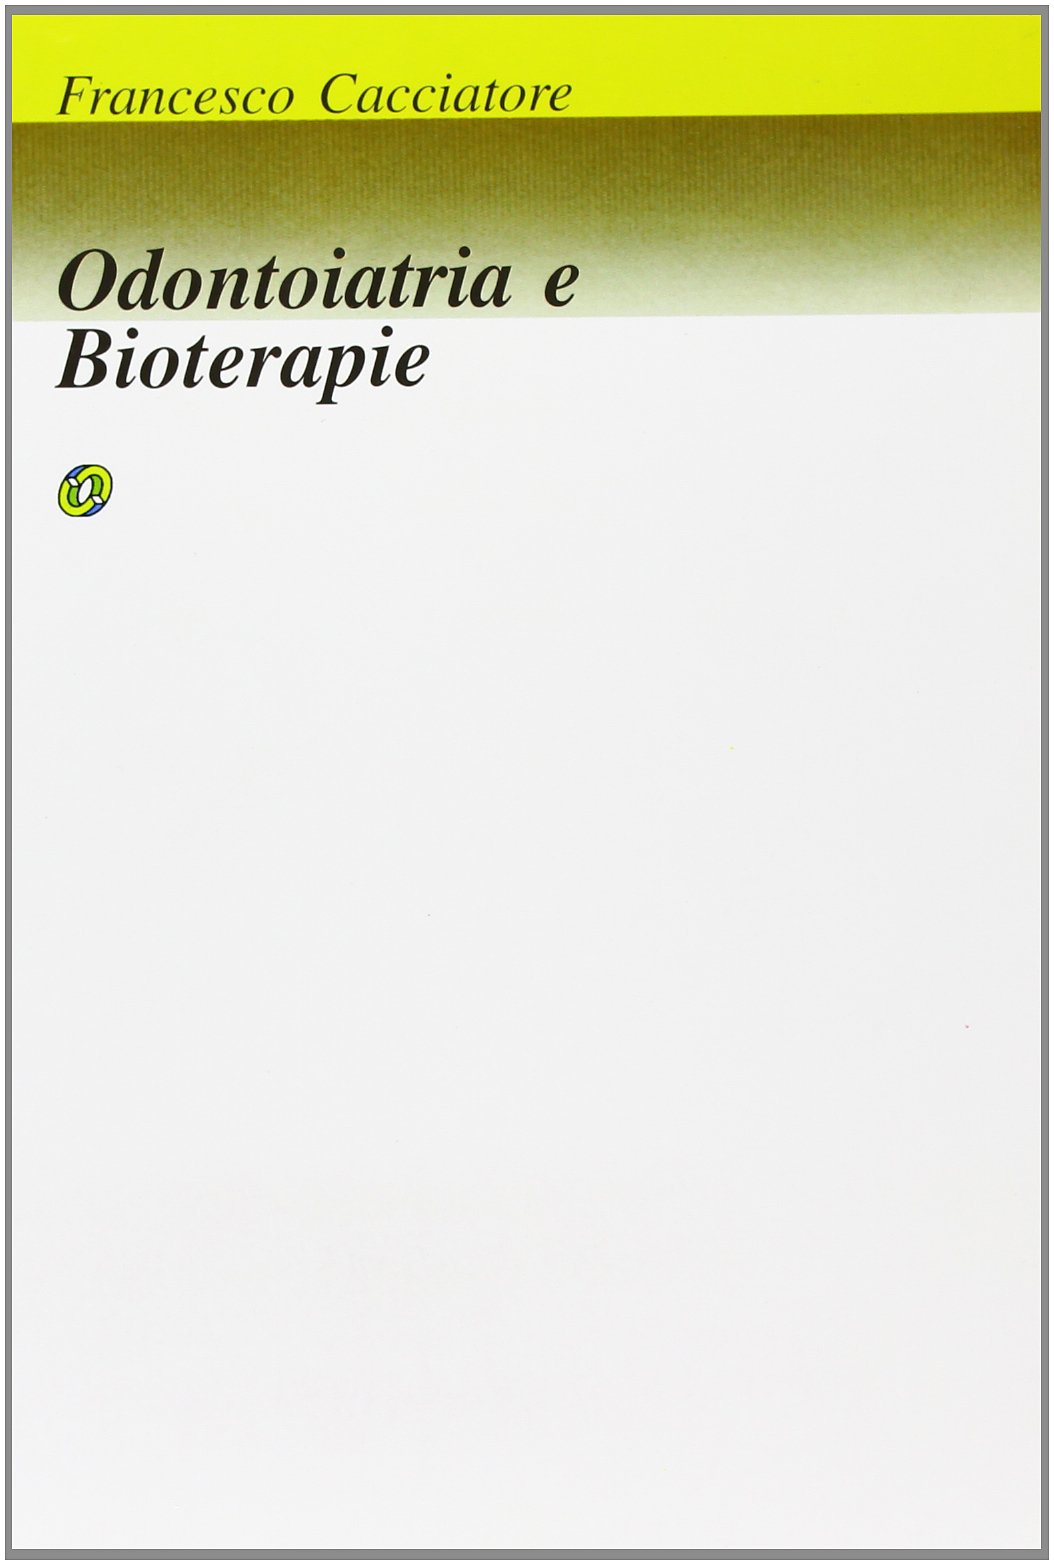 Libri Francesco Cacciatore - Odontoiatria E Bioterapia NUOVO SIGILLATO, EDIZIONE DEL 01/01/2001 SUBITO DISPONIBILE